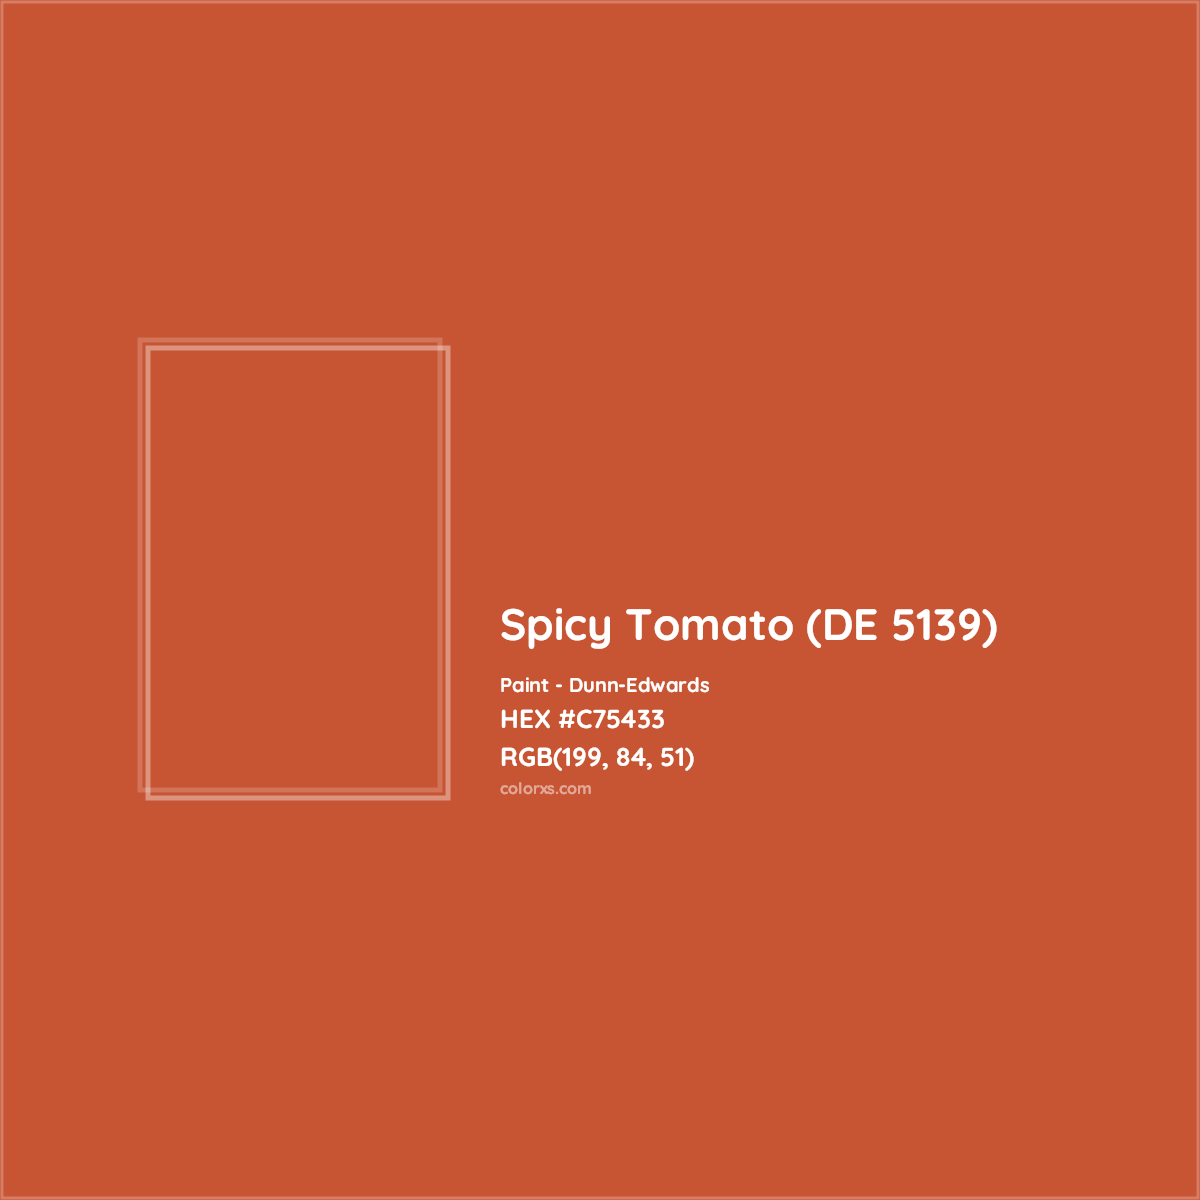 HEX #C75433 Spicy Tomato (DE 5139) Paint Dunn-Edwards - Color Code